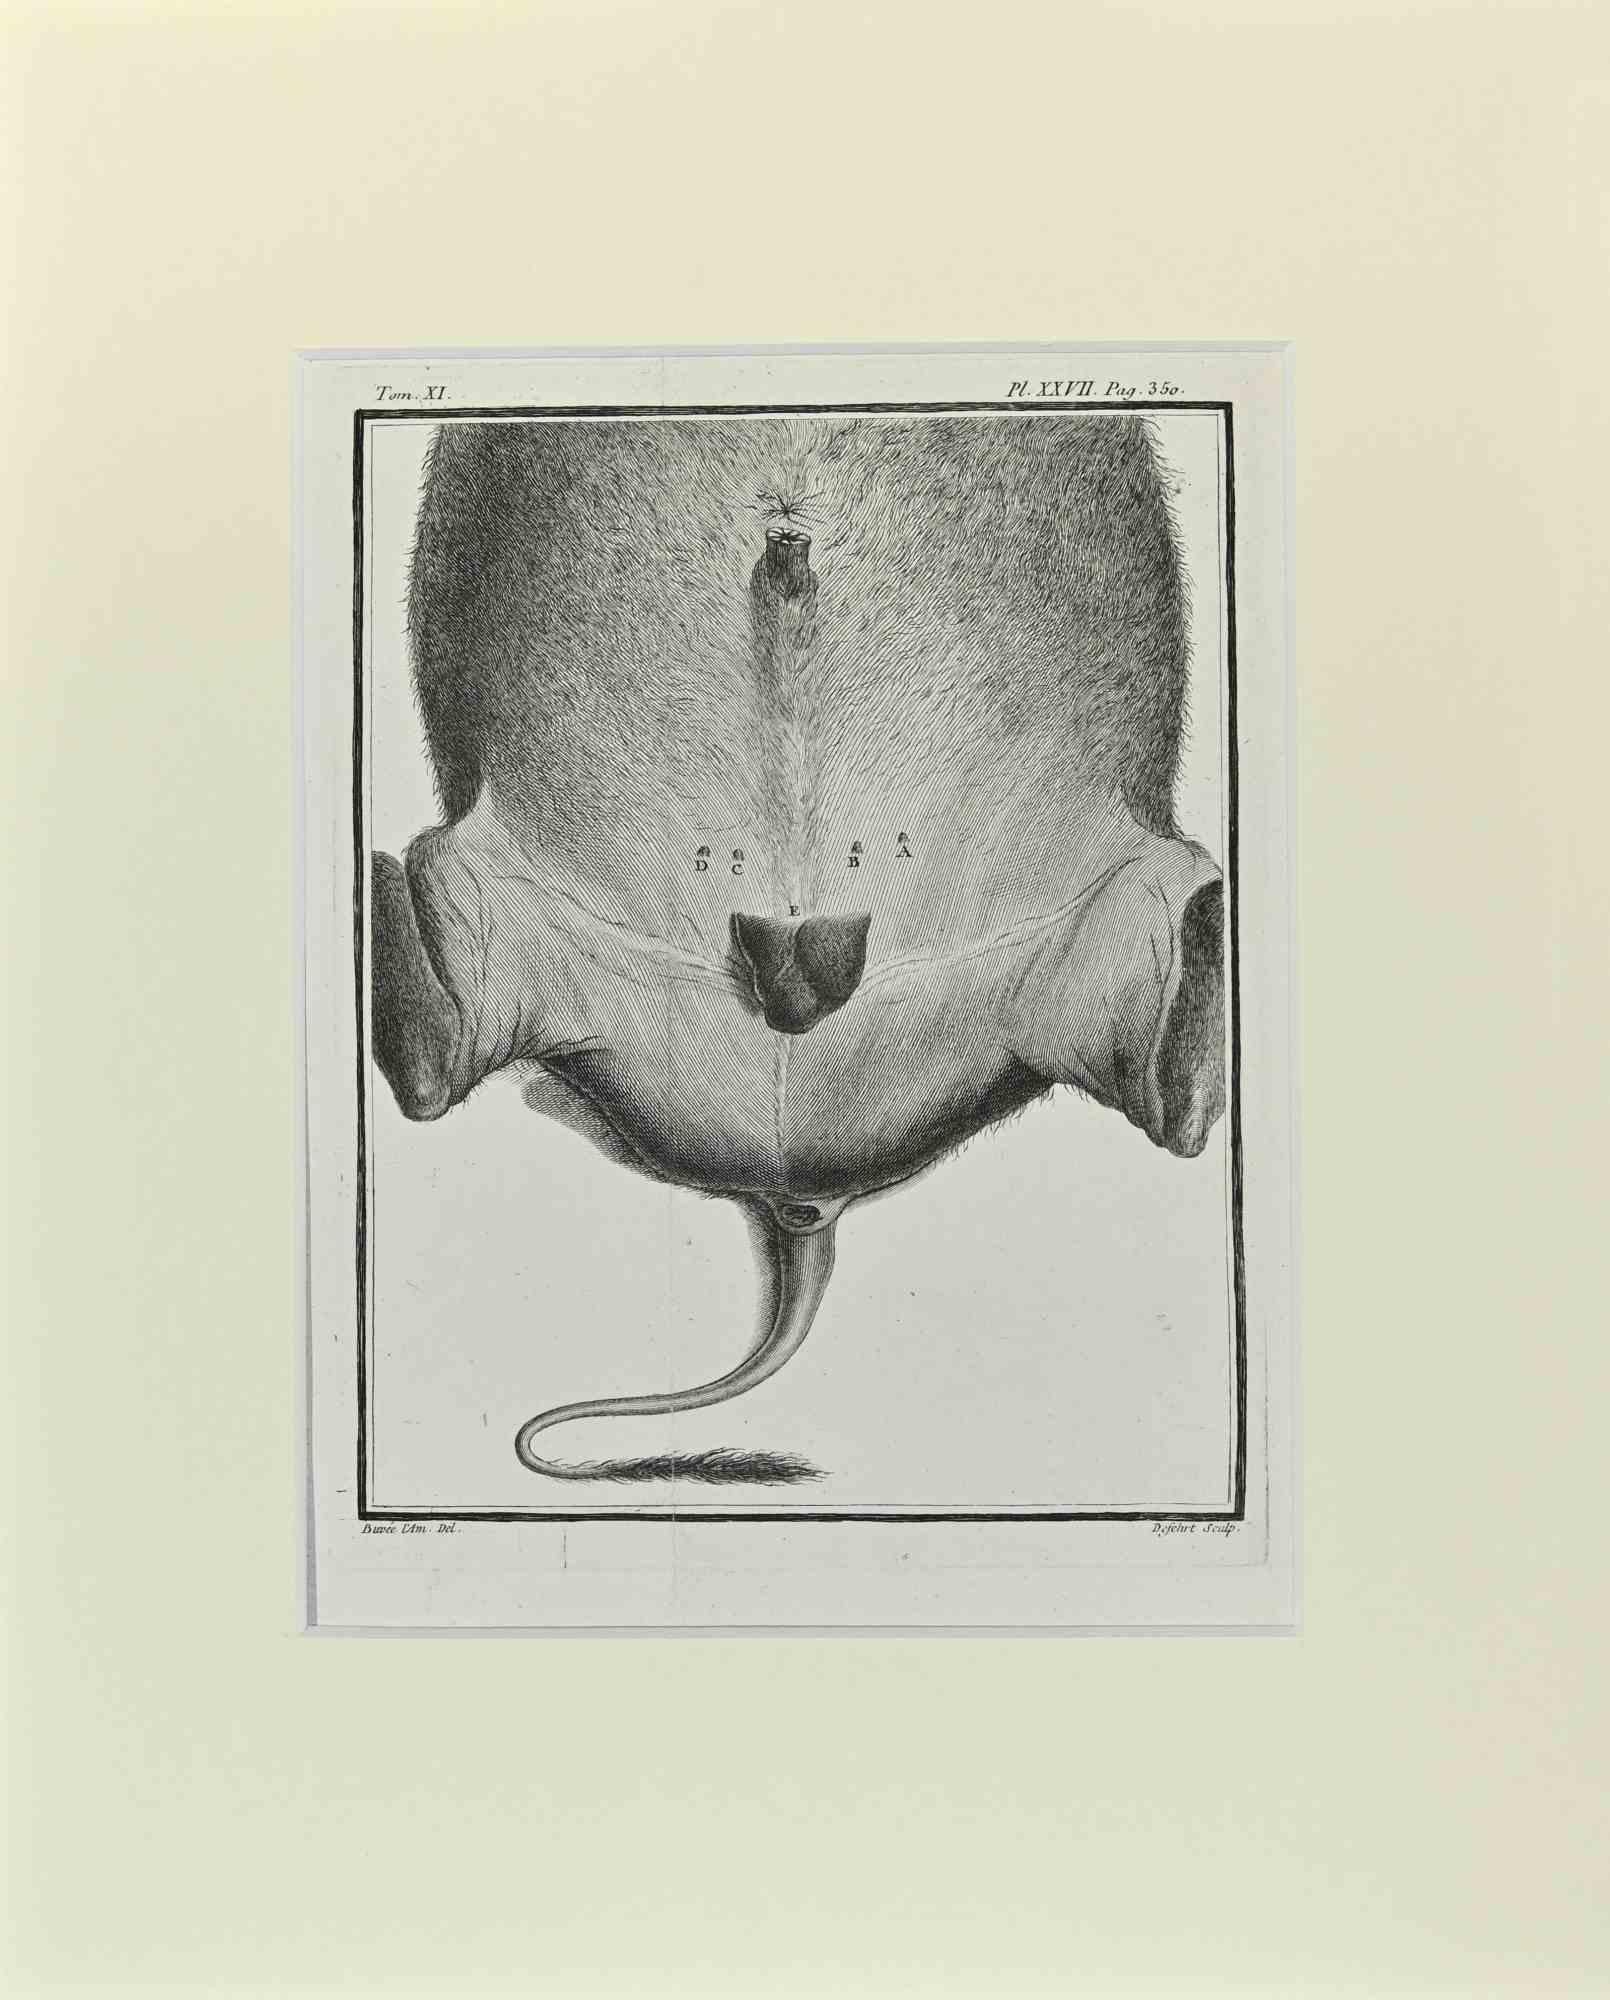 L'anatomie du buffle est une œuvre d'art réalisée par Buvée l'Américain en 1771.  

Gravure à l'eau-forte B./W. sur papier ivoire. Signé sur la plaque dans la marge inférieure gauche.

L'œuvre est collée sur du carton. Dimensions totales : 35x28